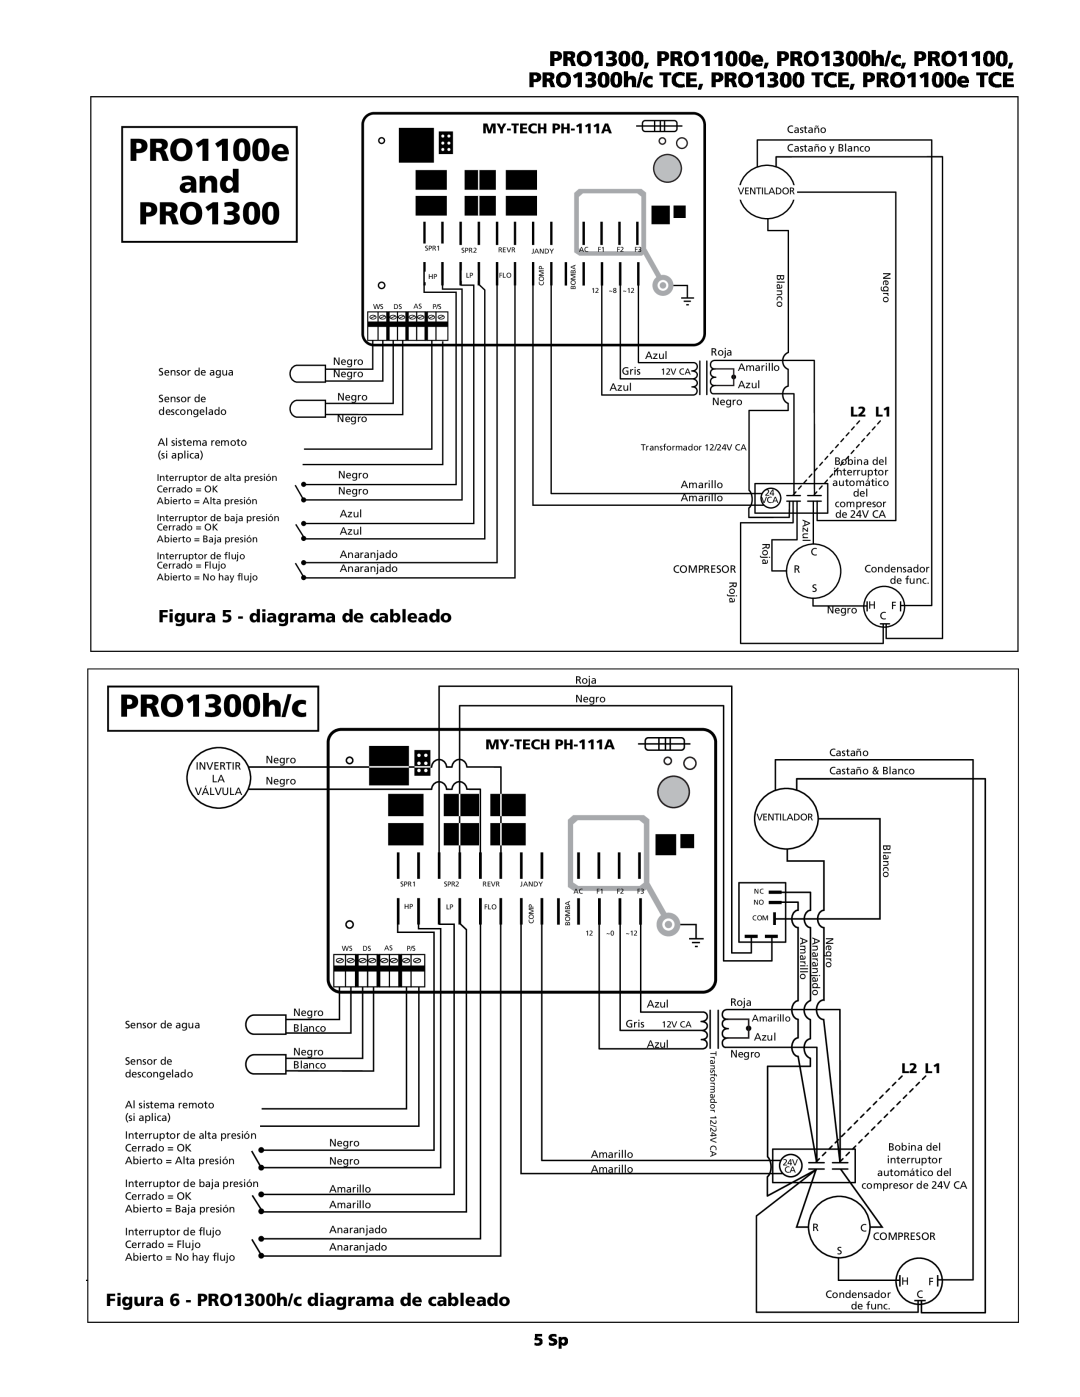 AquaPRO PRO1300 TCE Figura 5 - diagrama de cableado, Figura 6 - PRO1300h/c diagrama de cableado, PRO1100e, 5 Sp, L2 L1 